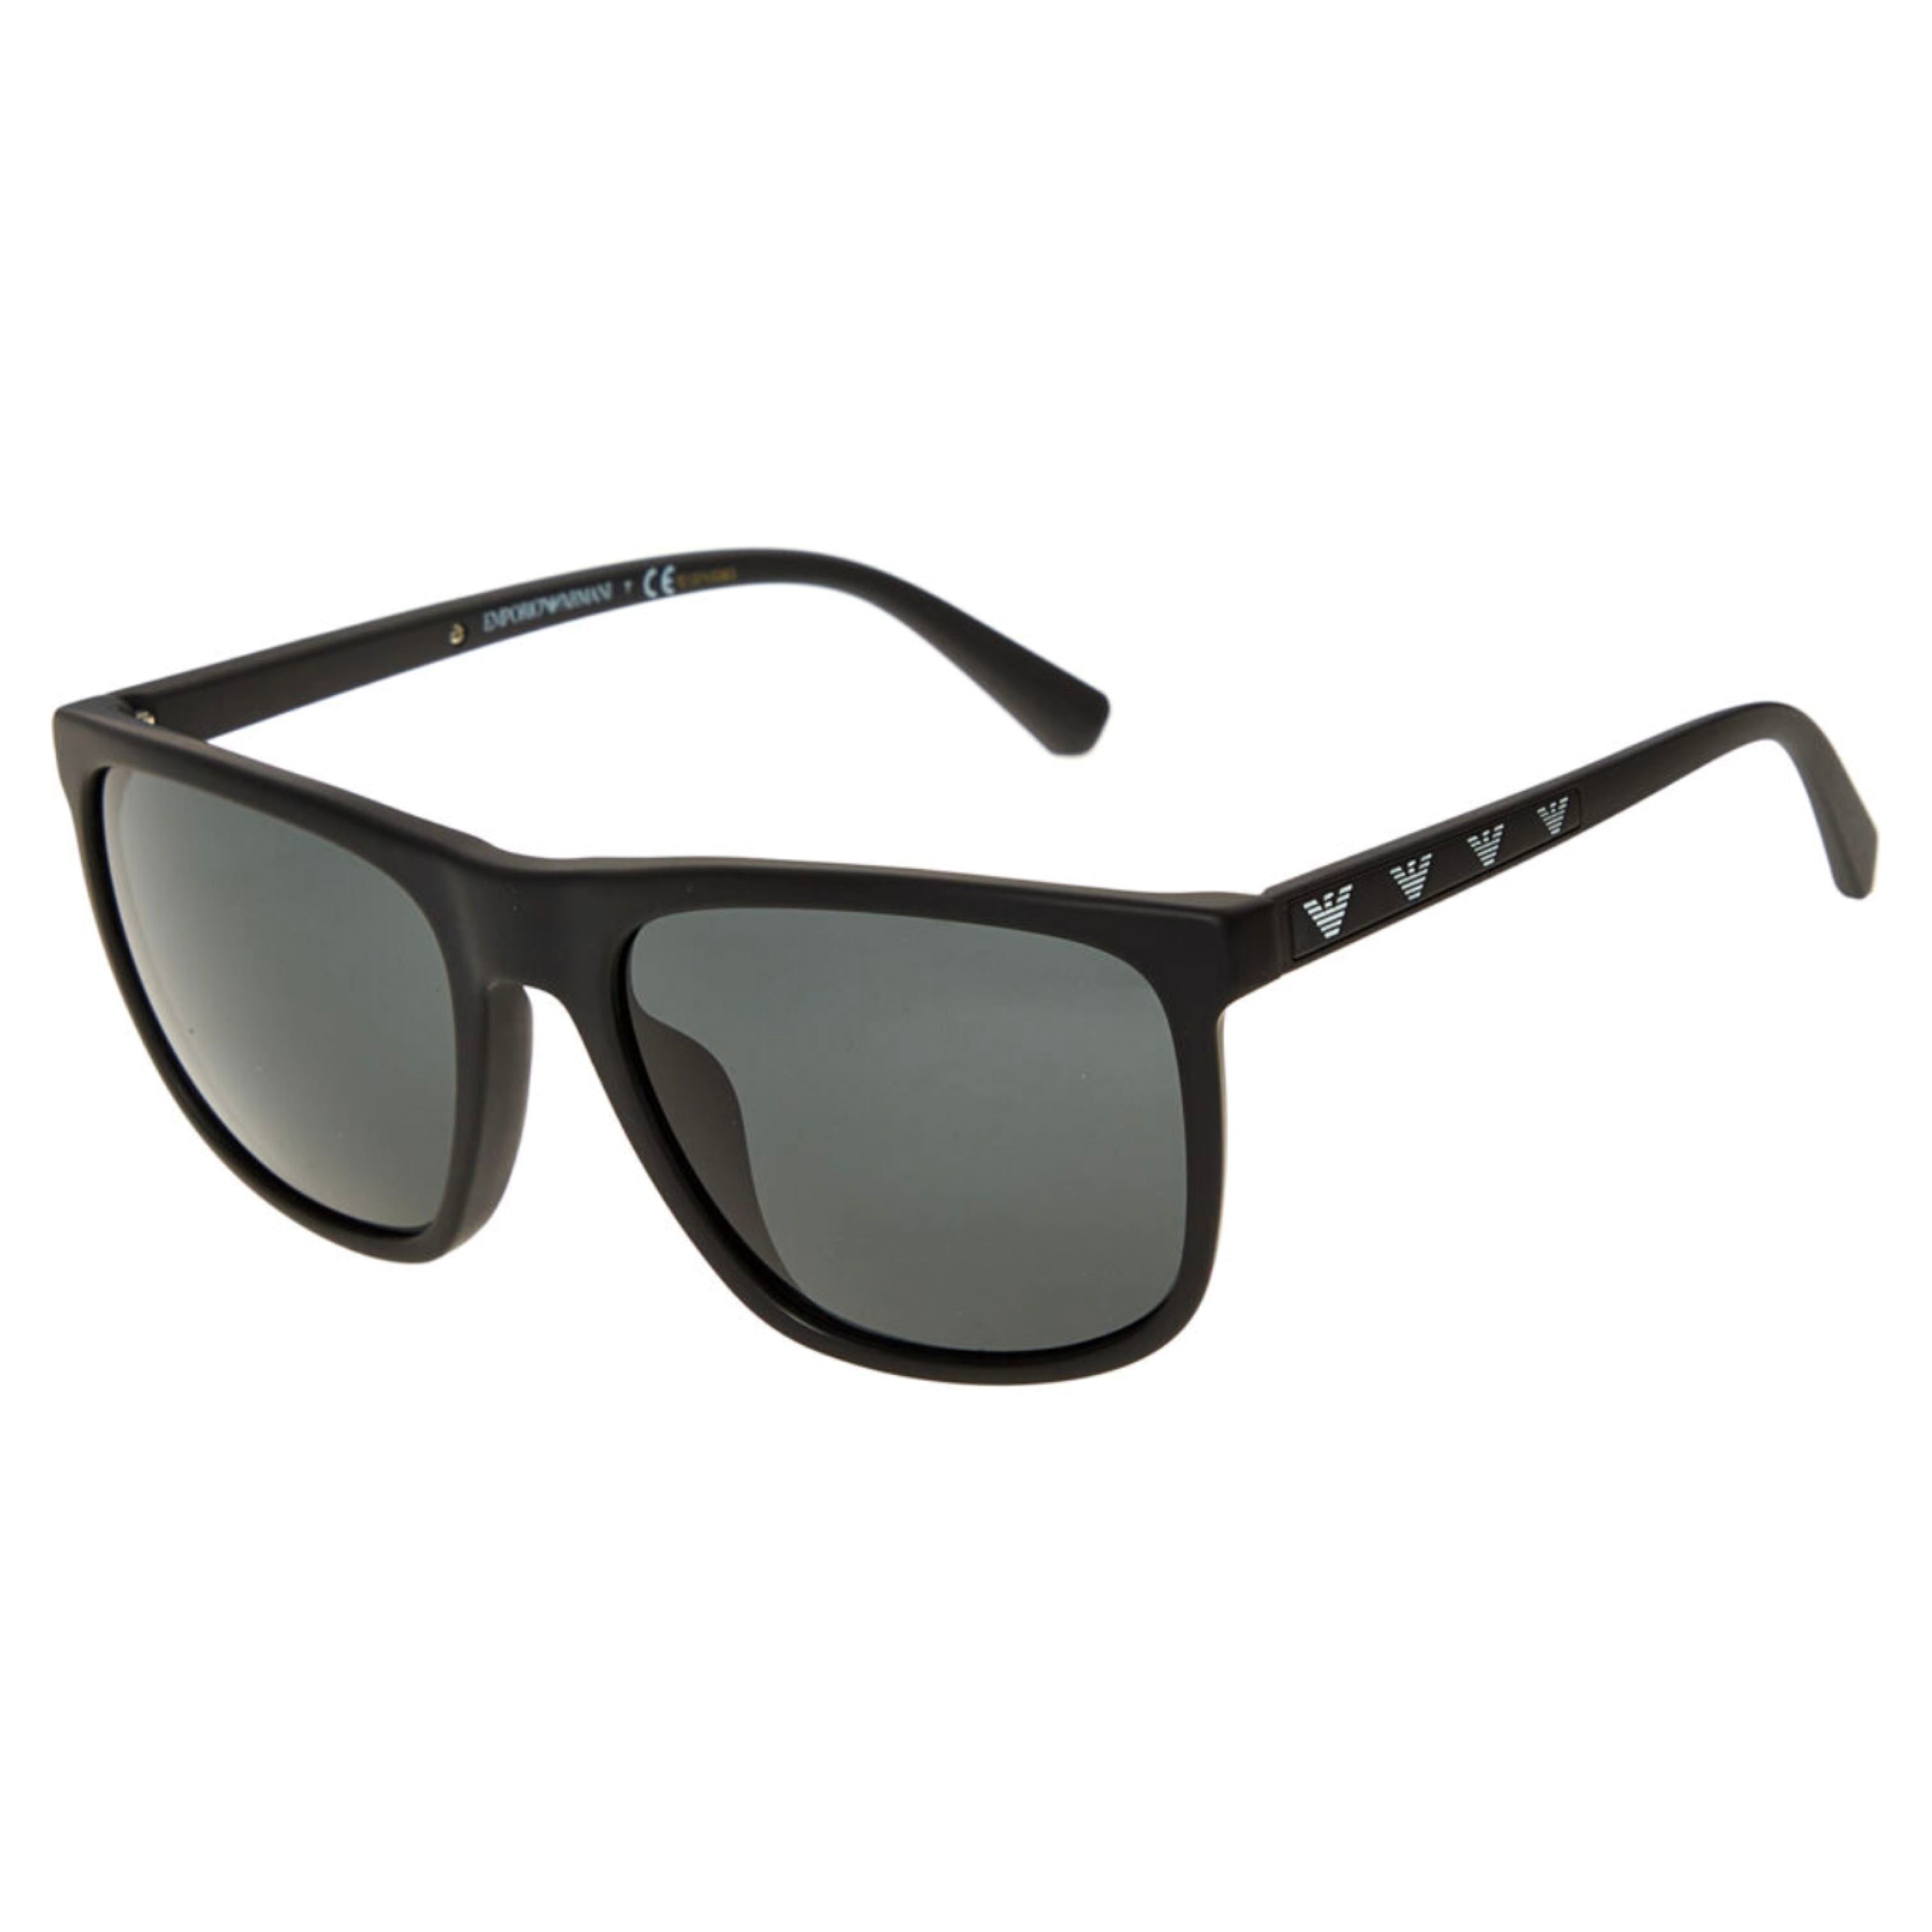 Men's Sunglasses Emporio Armani EA 4146 - buy, price, reviews in Estonia |  sellme.ee